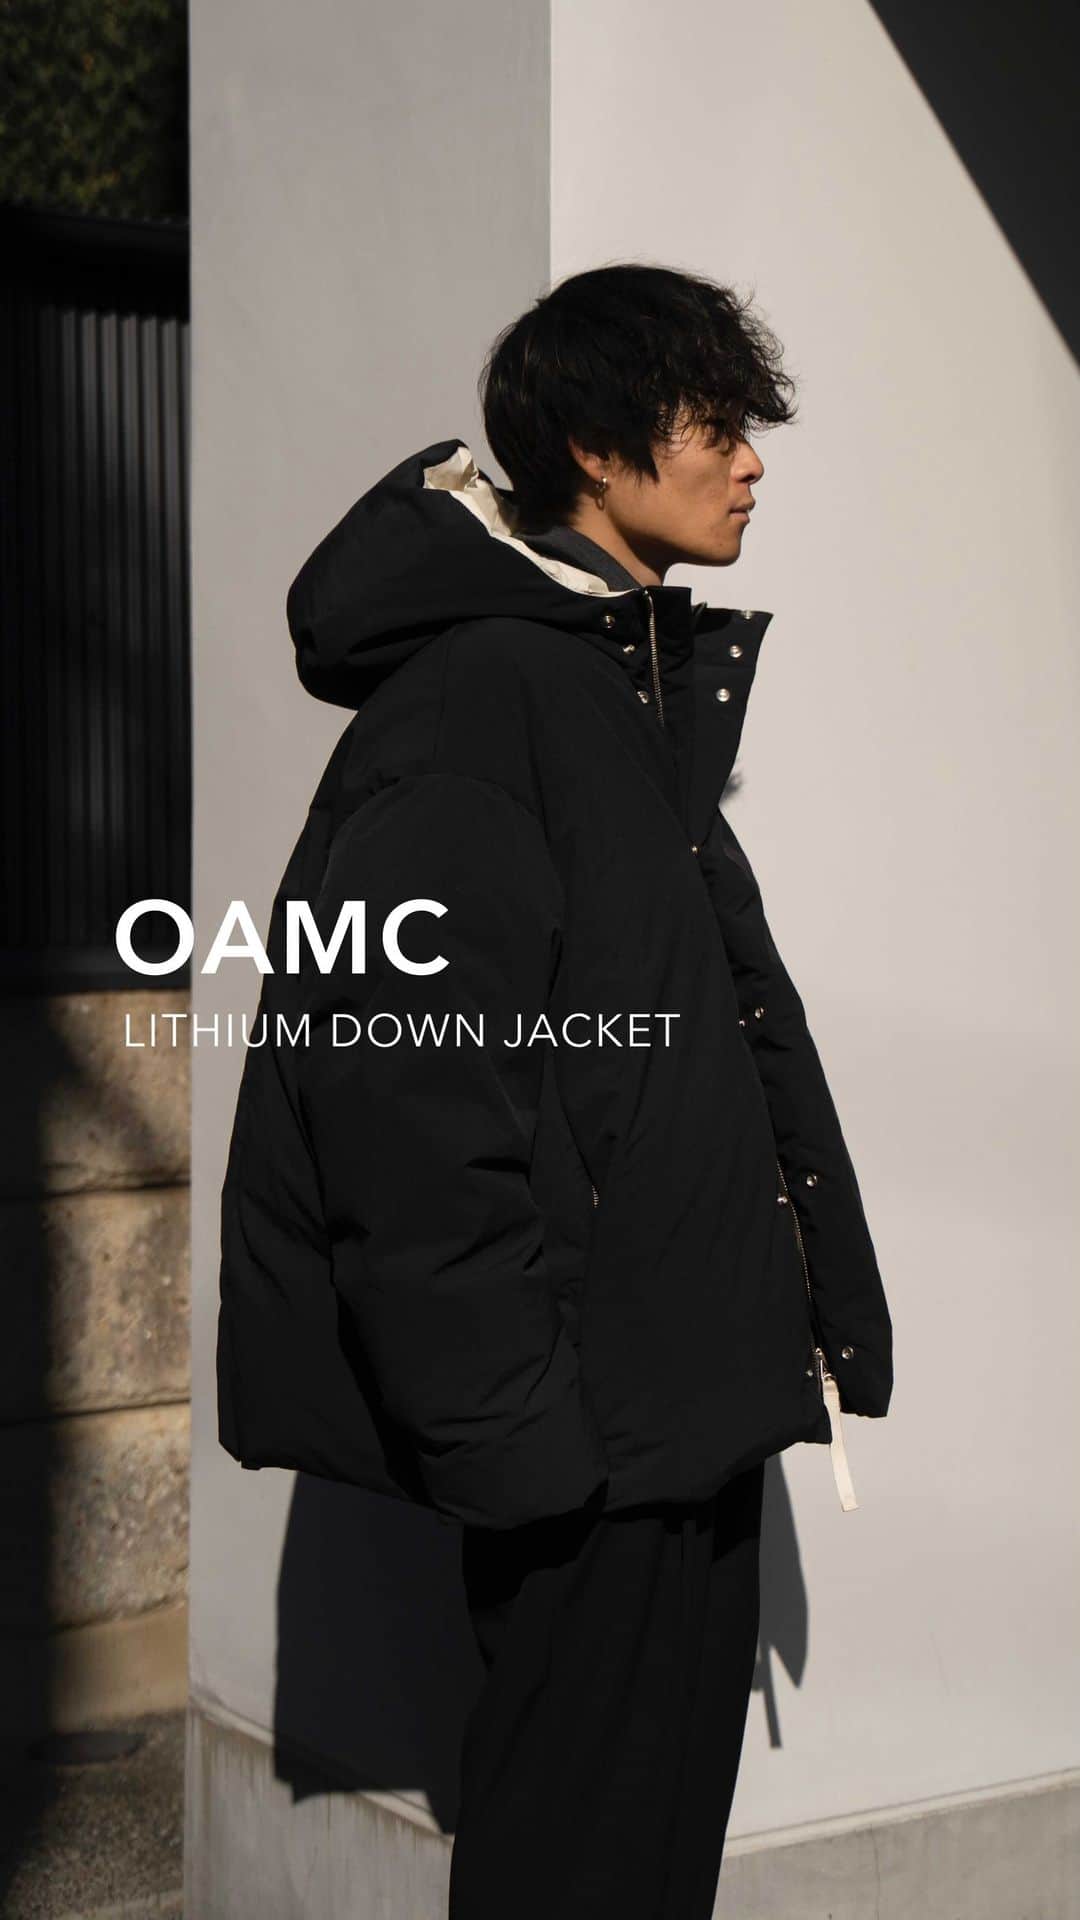 新品 OAMC Lithium Jacket 2.0 リチウム ダウンジャケット - ダウン